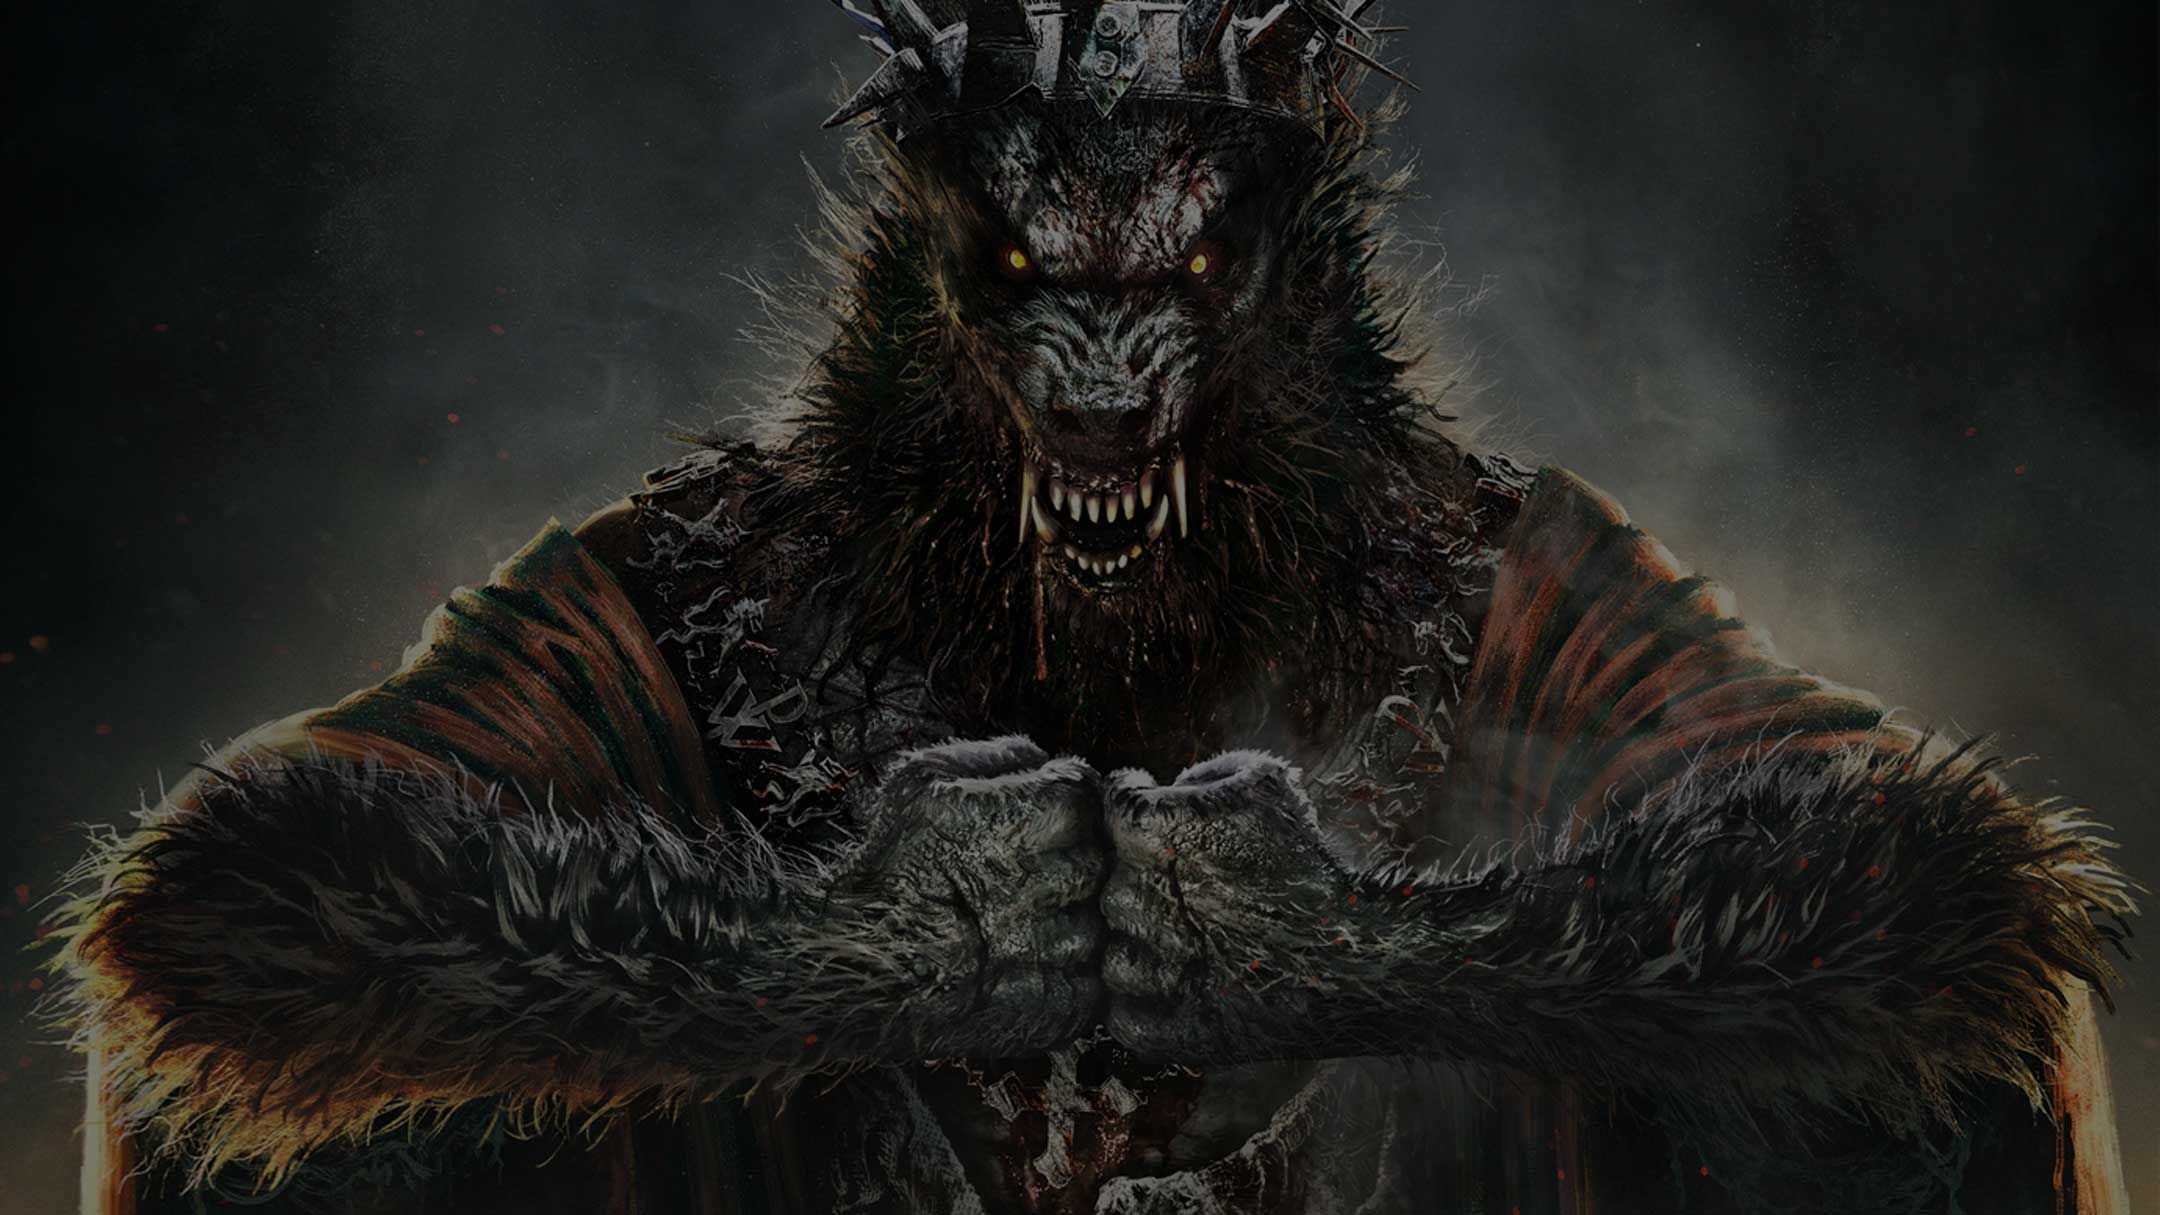 Powerwolf: альбомы, песни, плейлисты